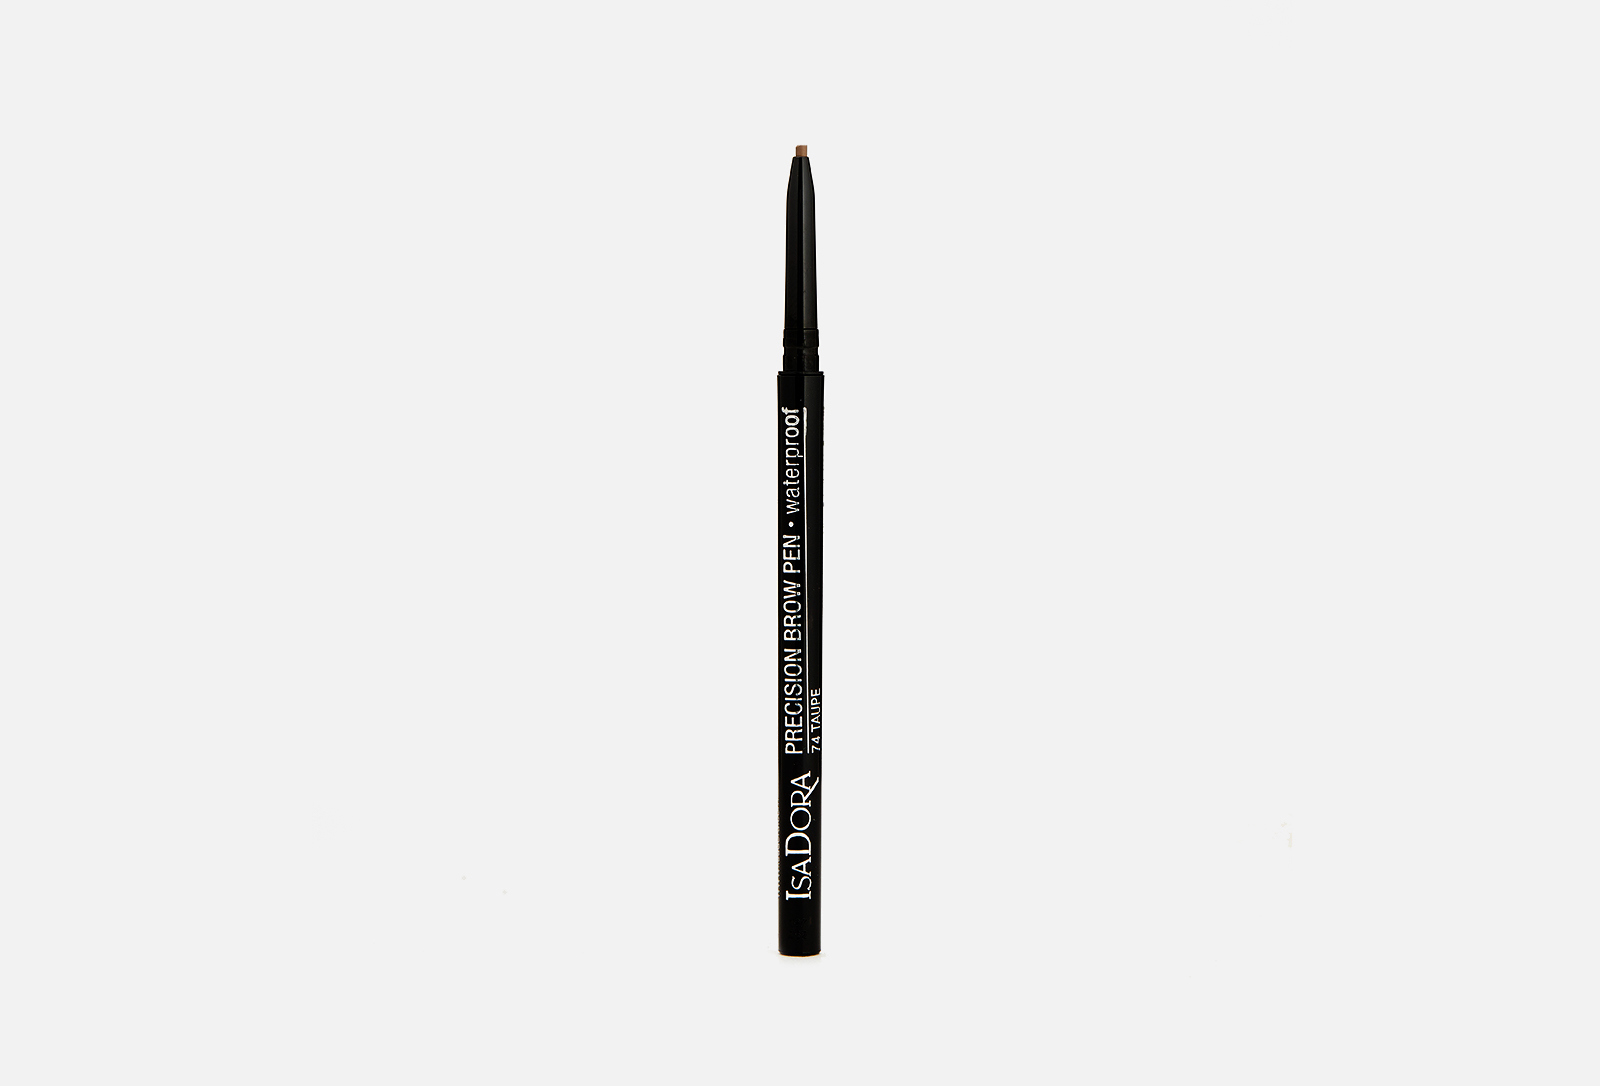 Isadora Водостойкий карандаш для бровей Precision Brow Pen Waterproof 74 Taupe 009 г — купить